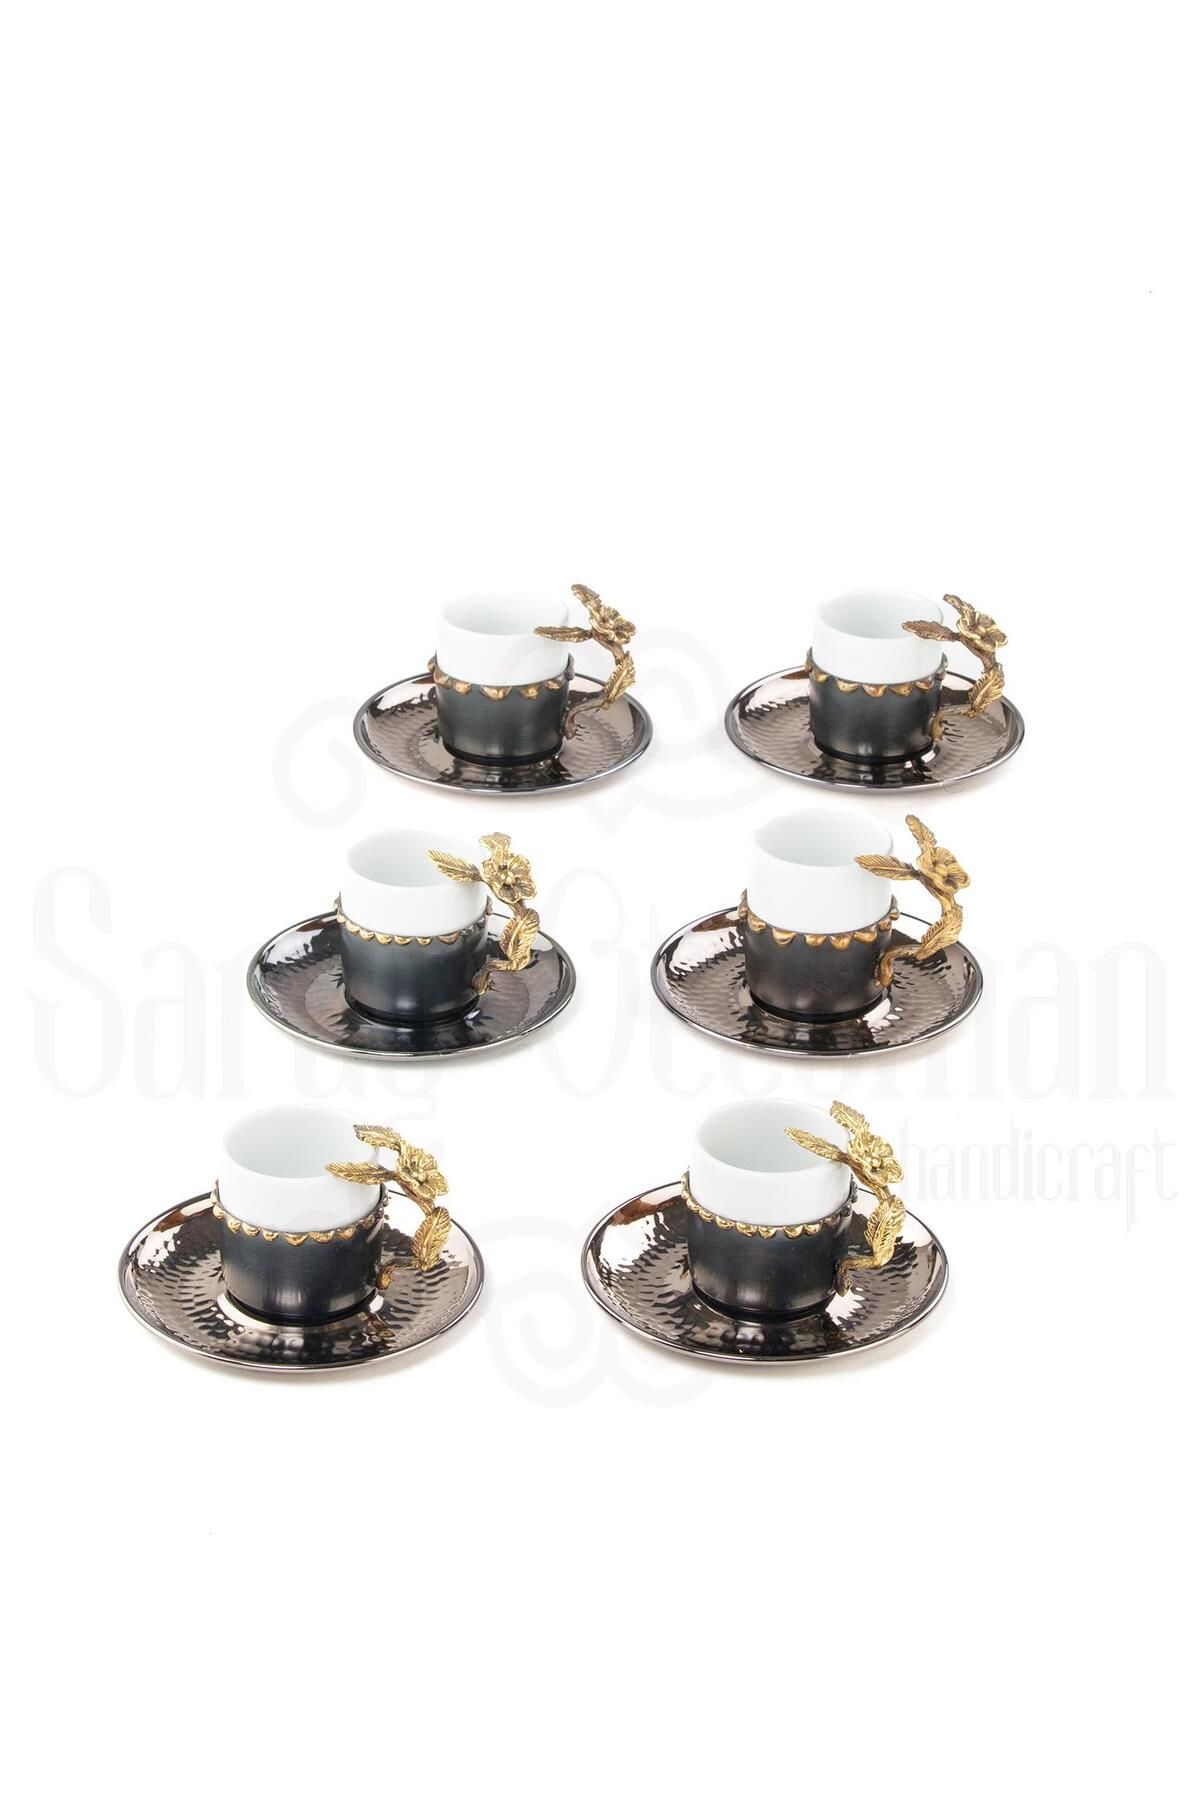 Saray Ottoman Kahve Fincanı Bakır Fincan Porselen Fincan Japon Gülü 6'lı Kahve Fincanı Mat Siyah